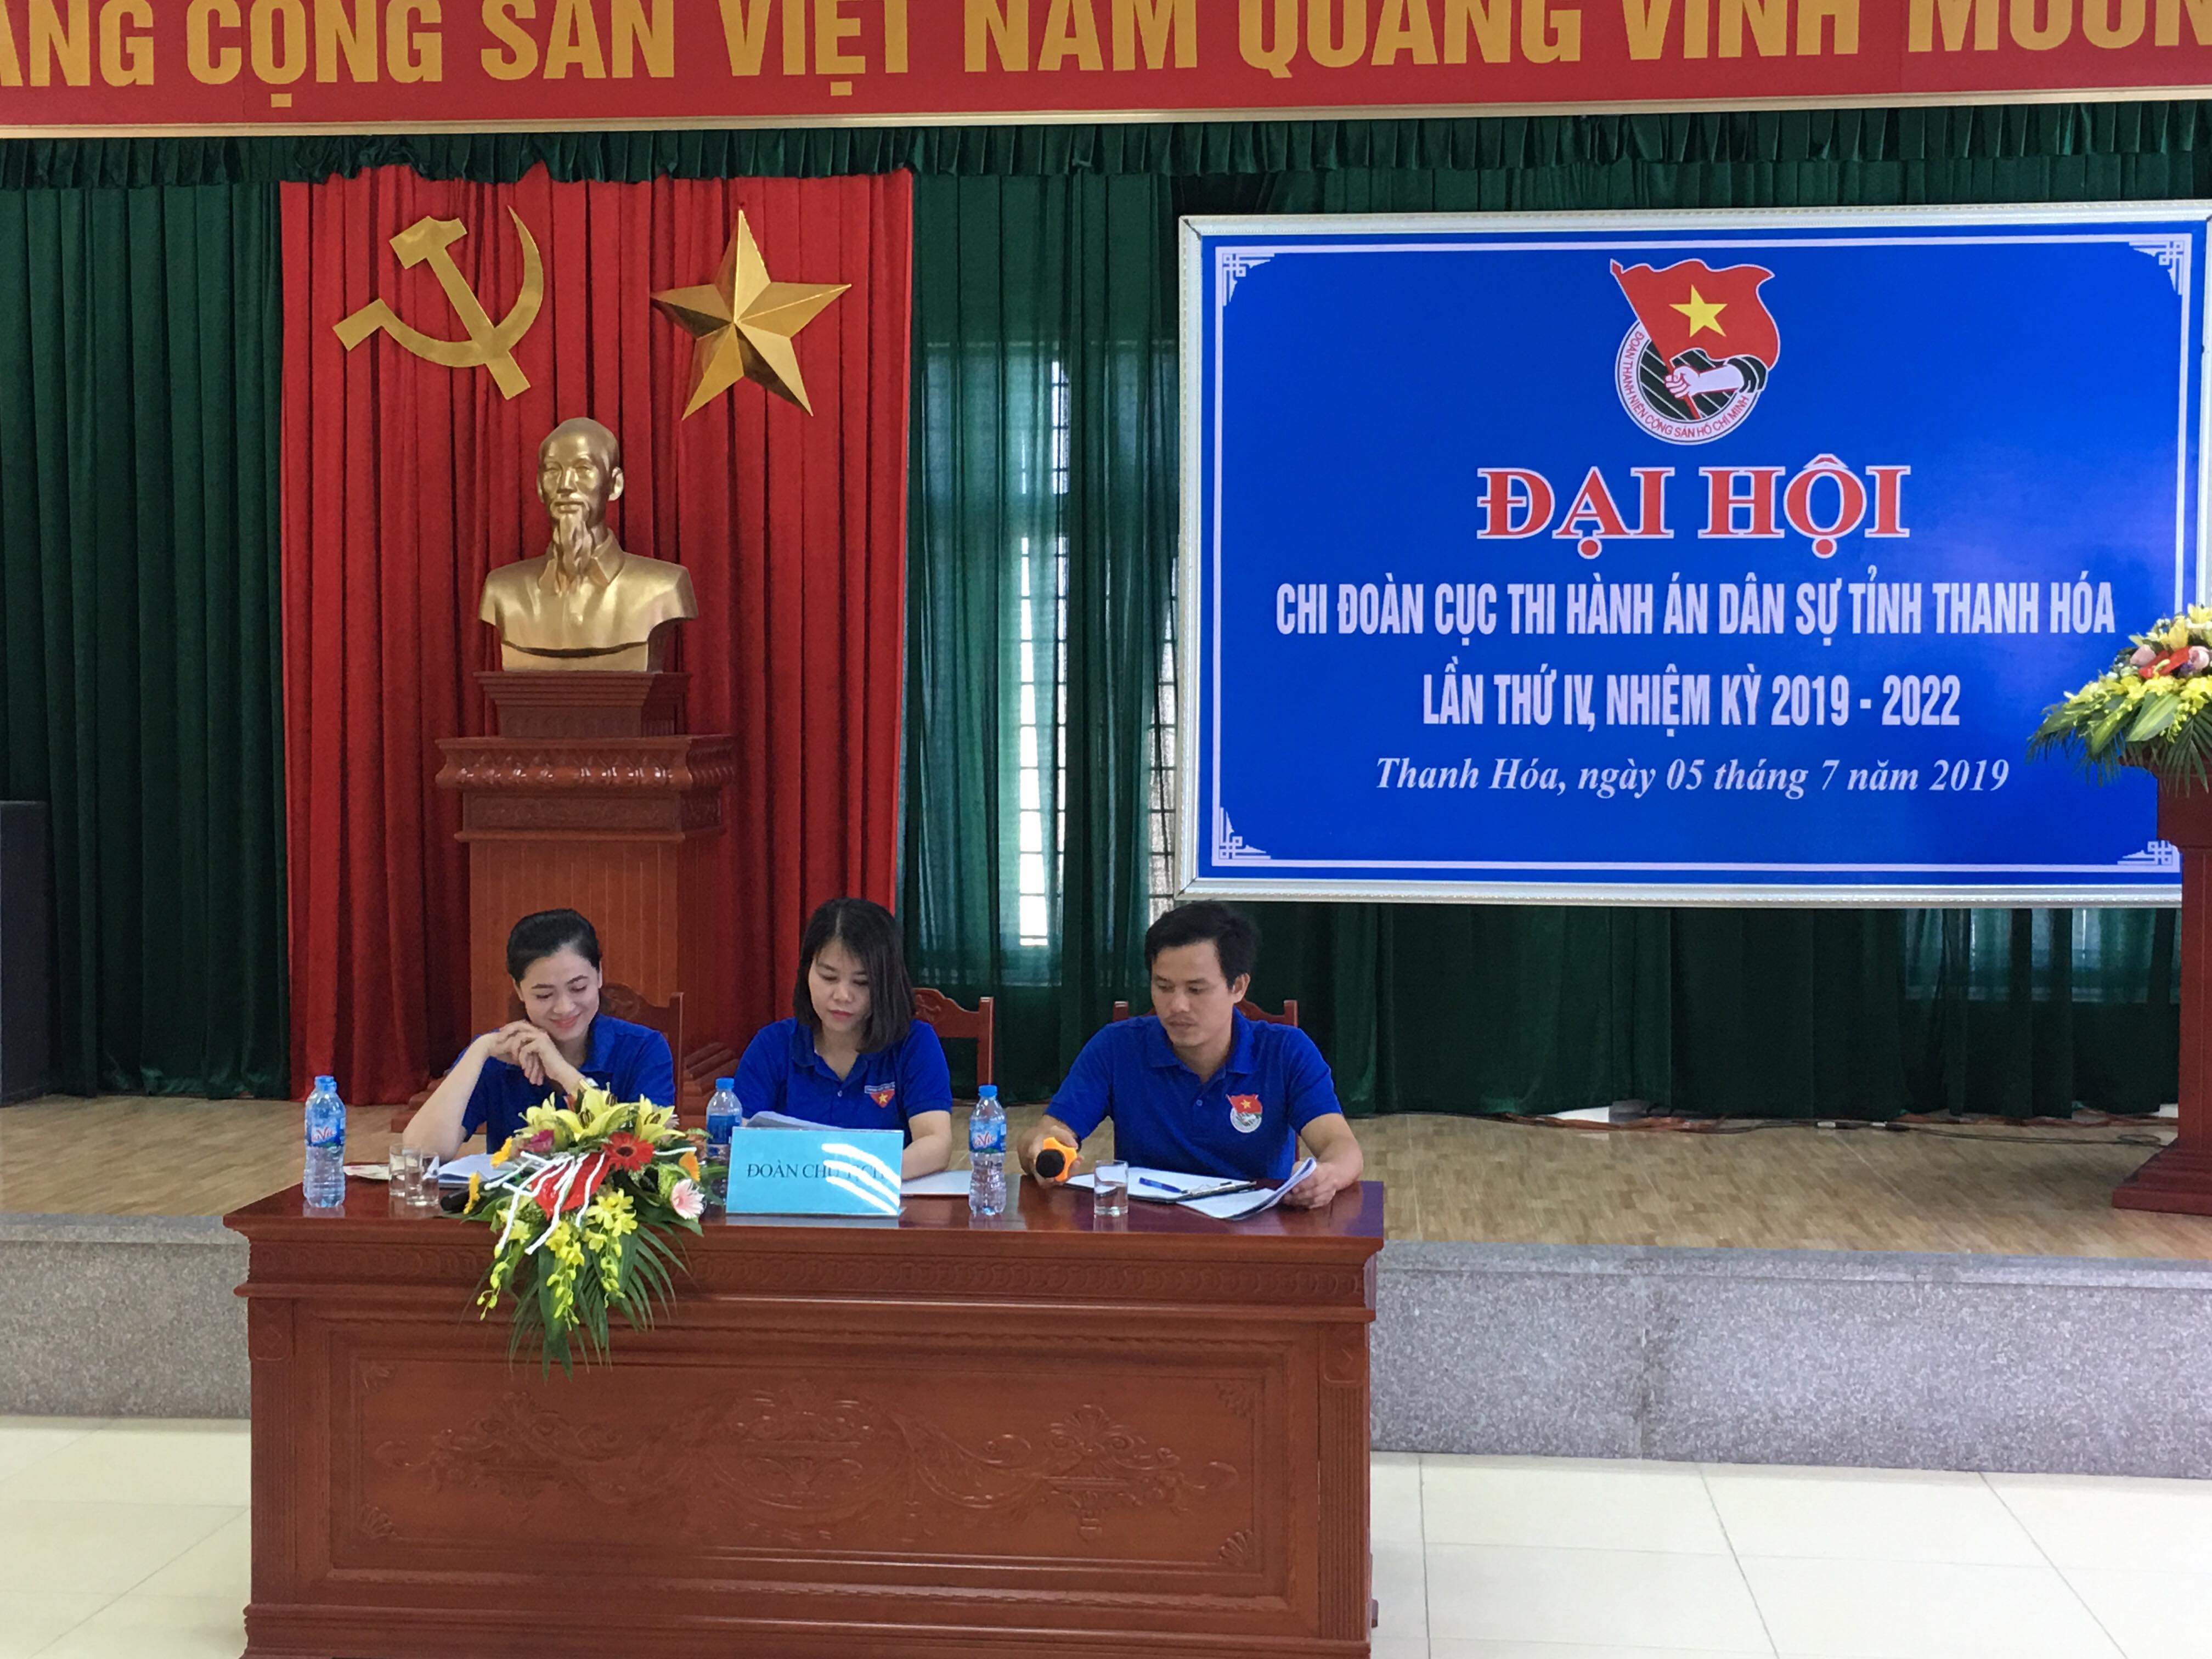 Chi đoàn Cục Thi hành án dân sự tỉnh Thanh Hóa tổ chức thành công Đại hội khóa IV, nhiệm kỳ 2019 - 2022